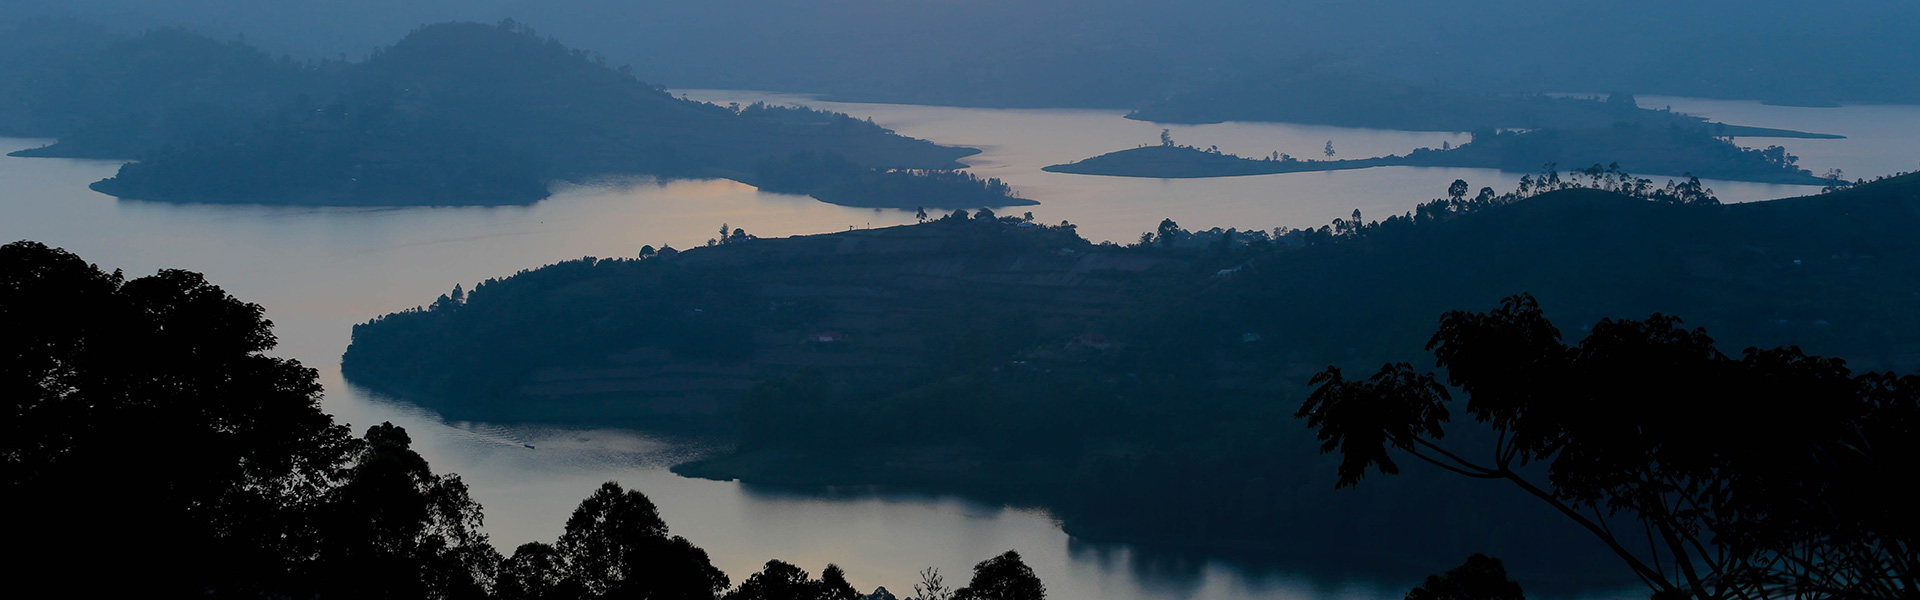 uganda-landscape-lake